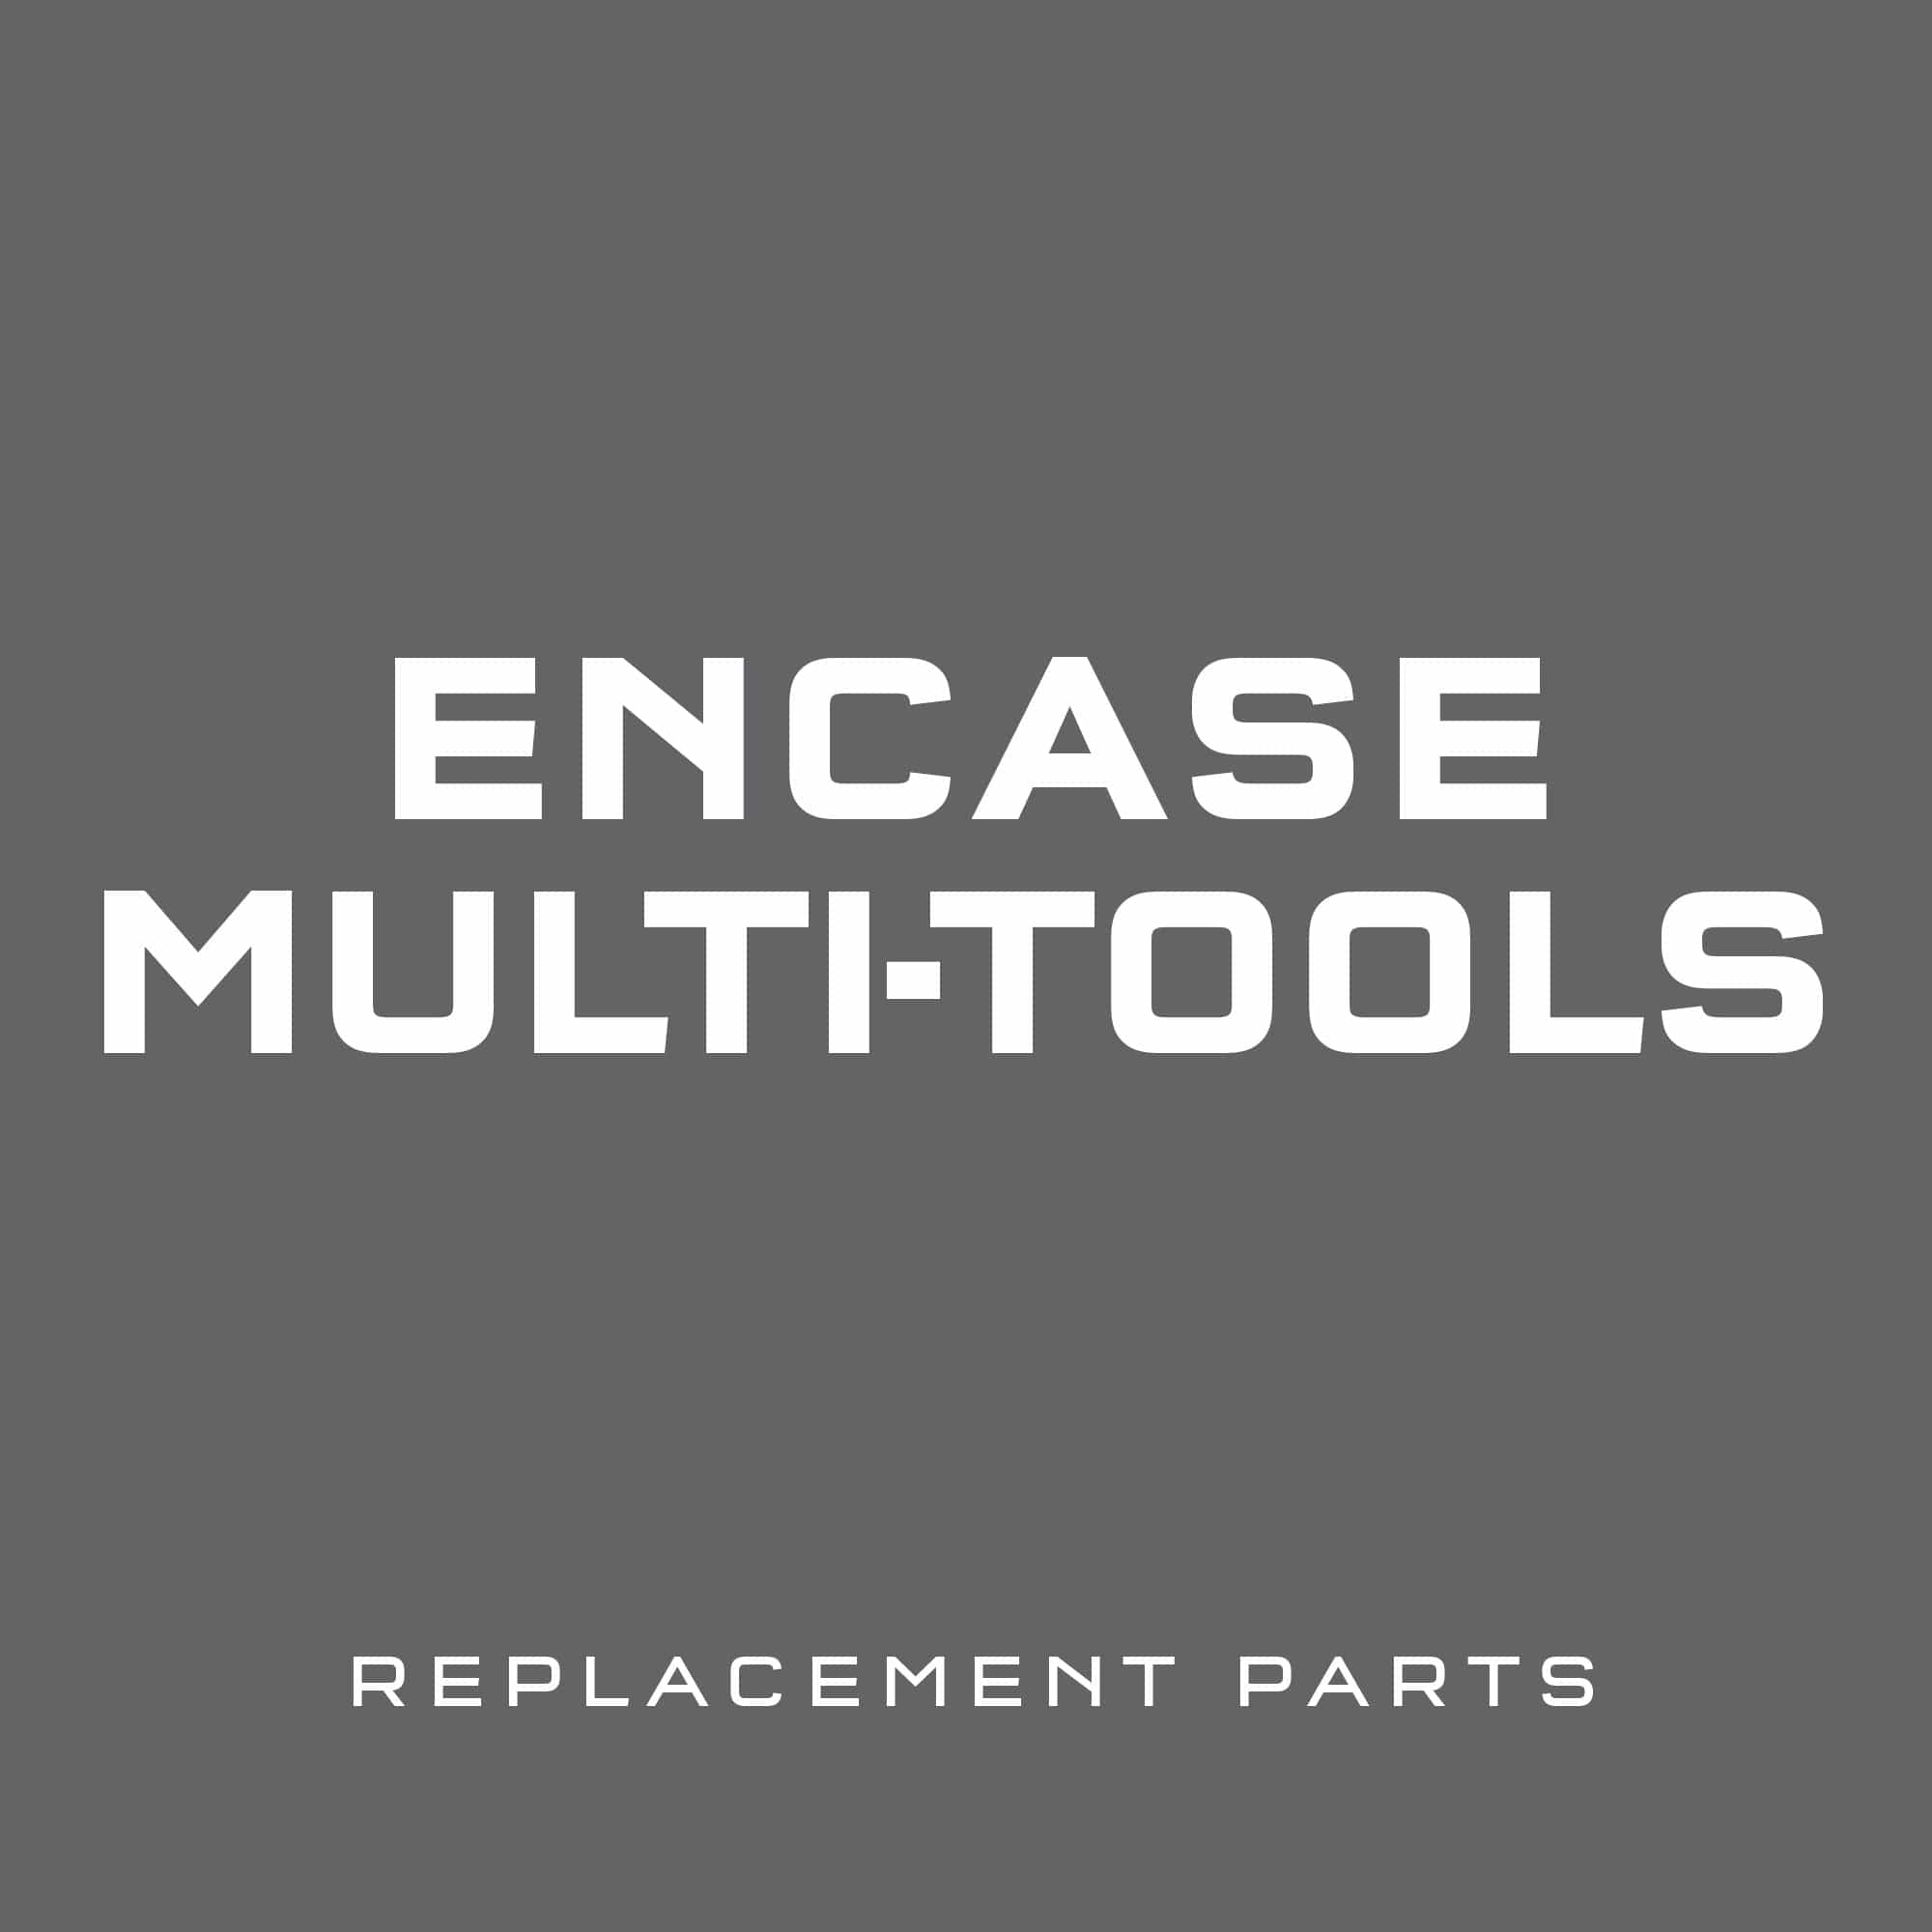 EnCase System Replacement Parts